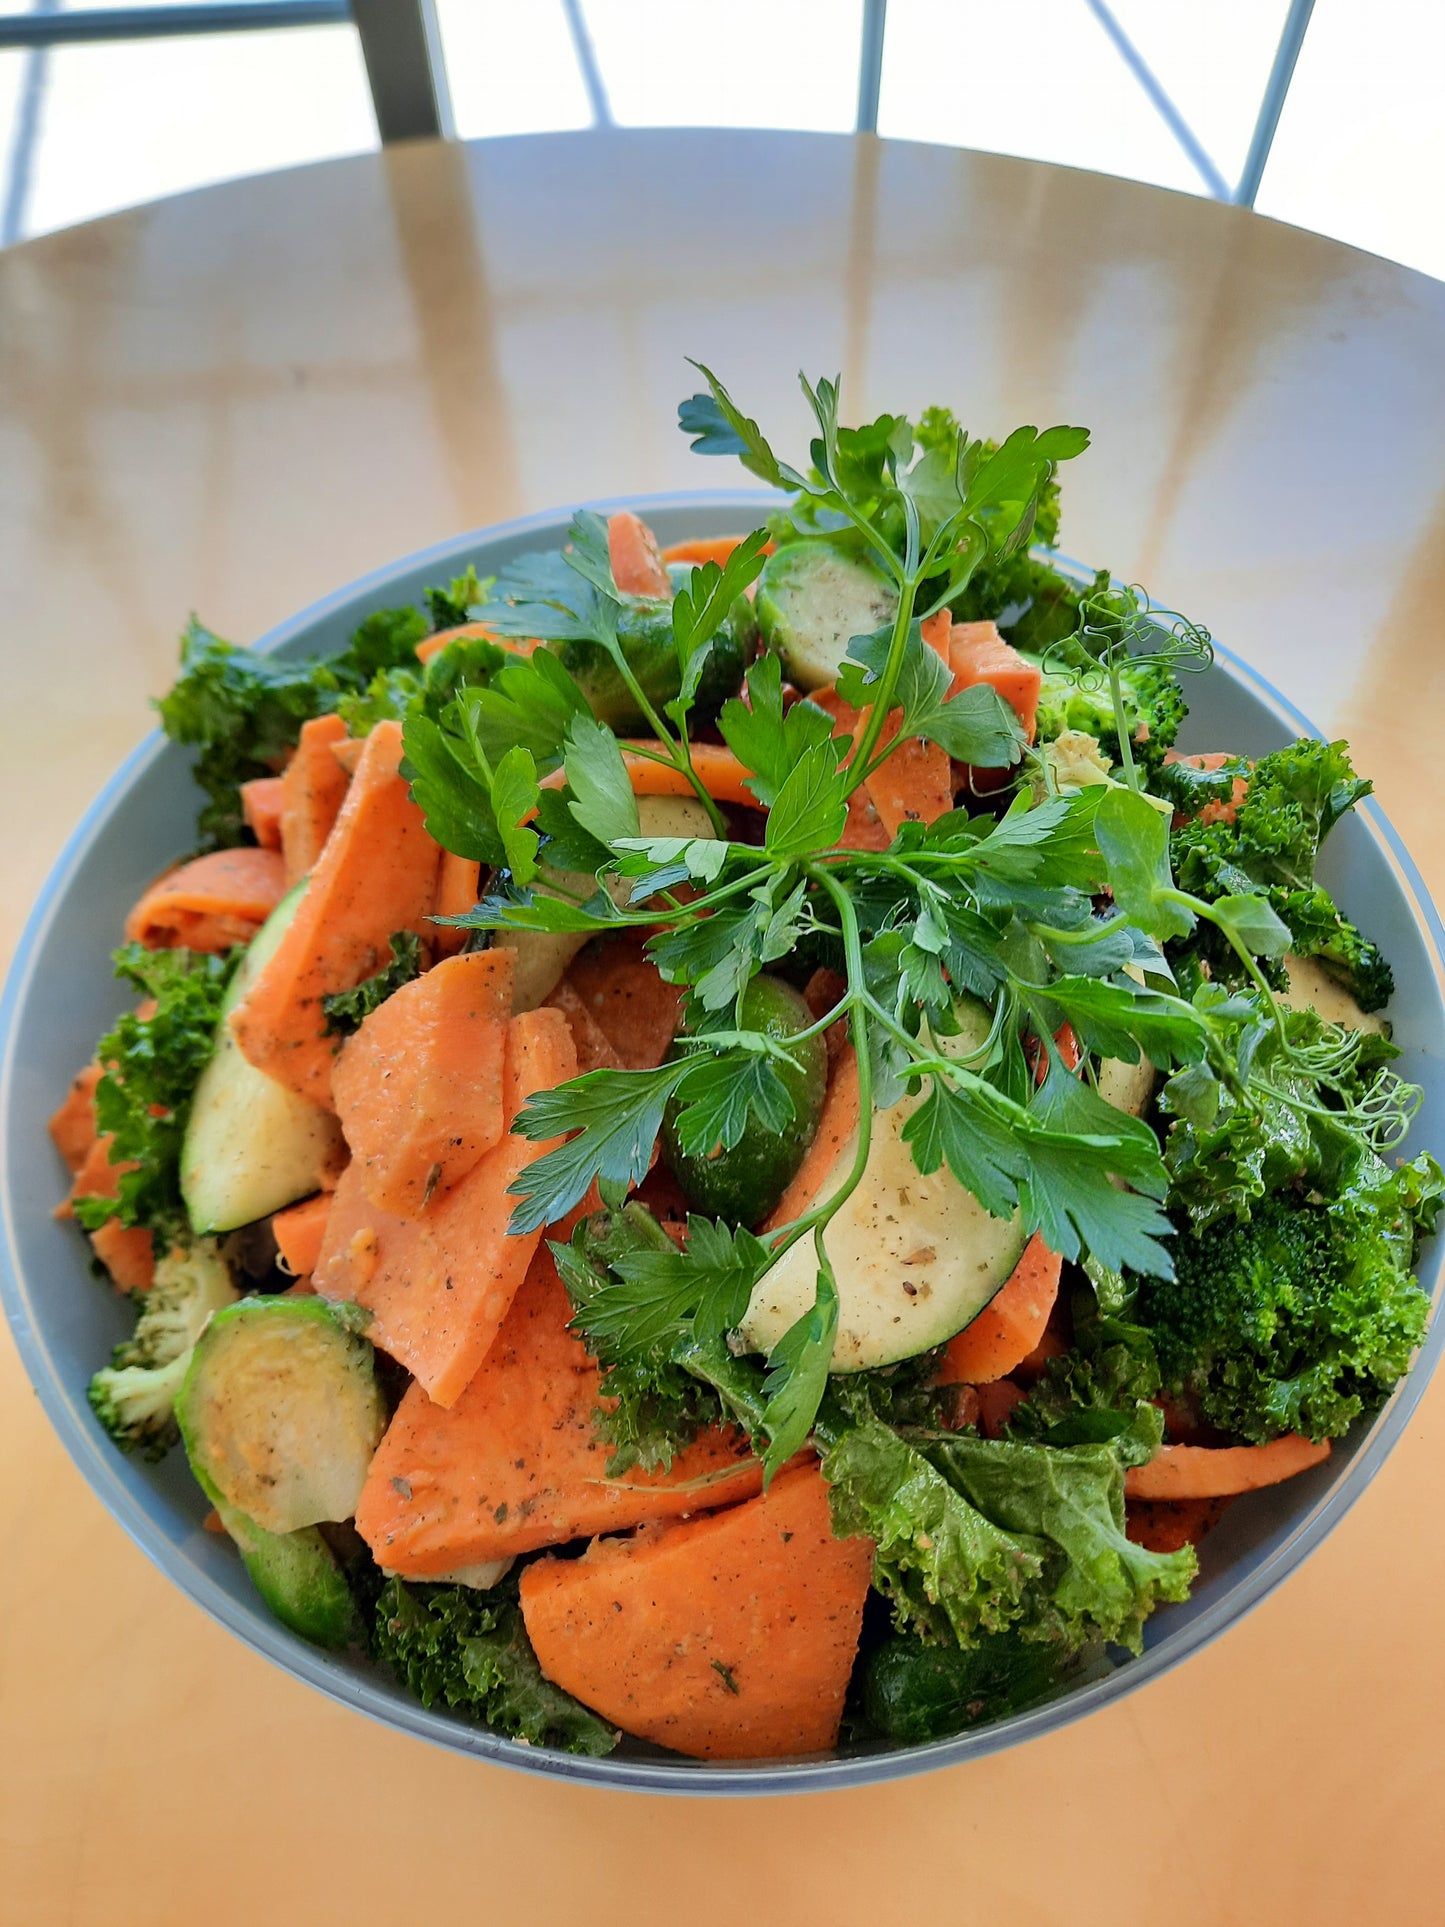 Buffet froid - Salade - Kale, patates douces et choux de bruxelles